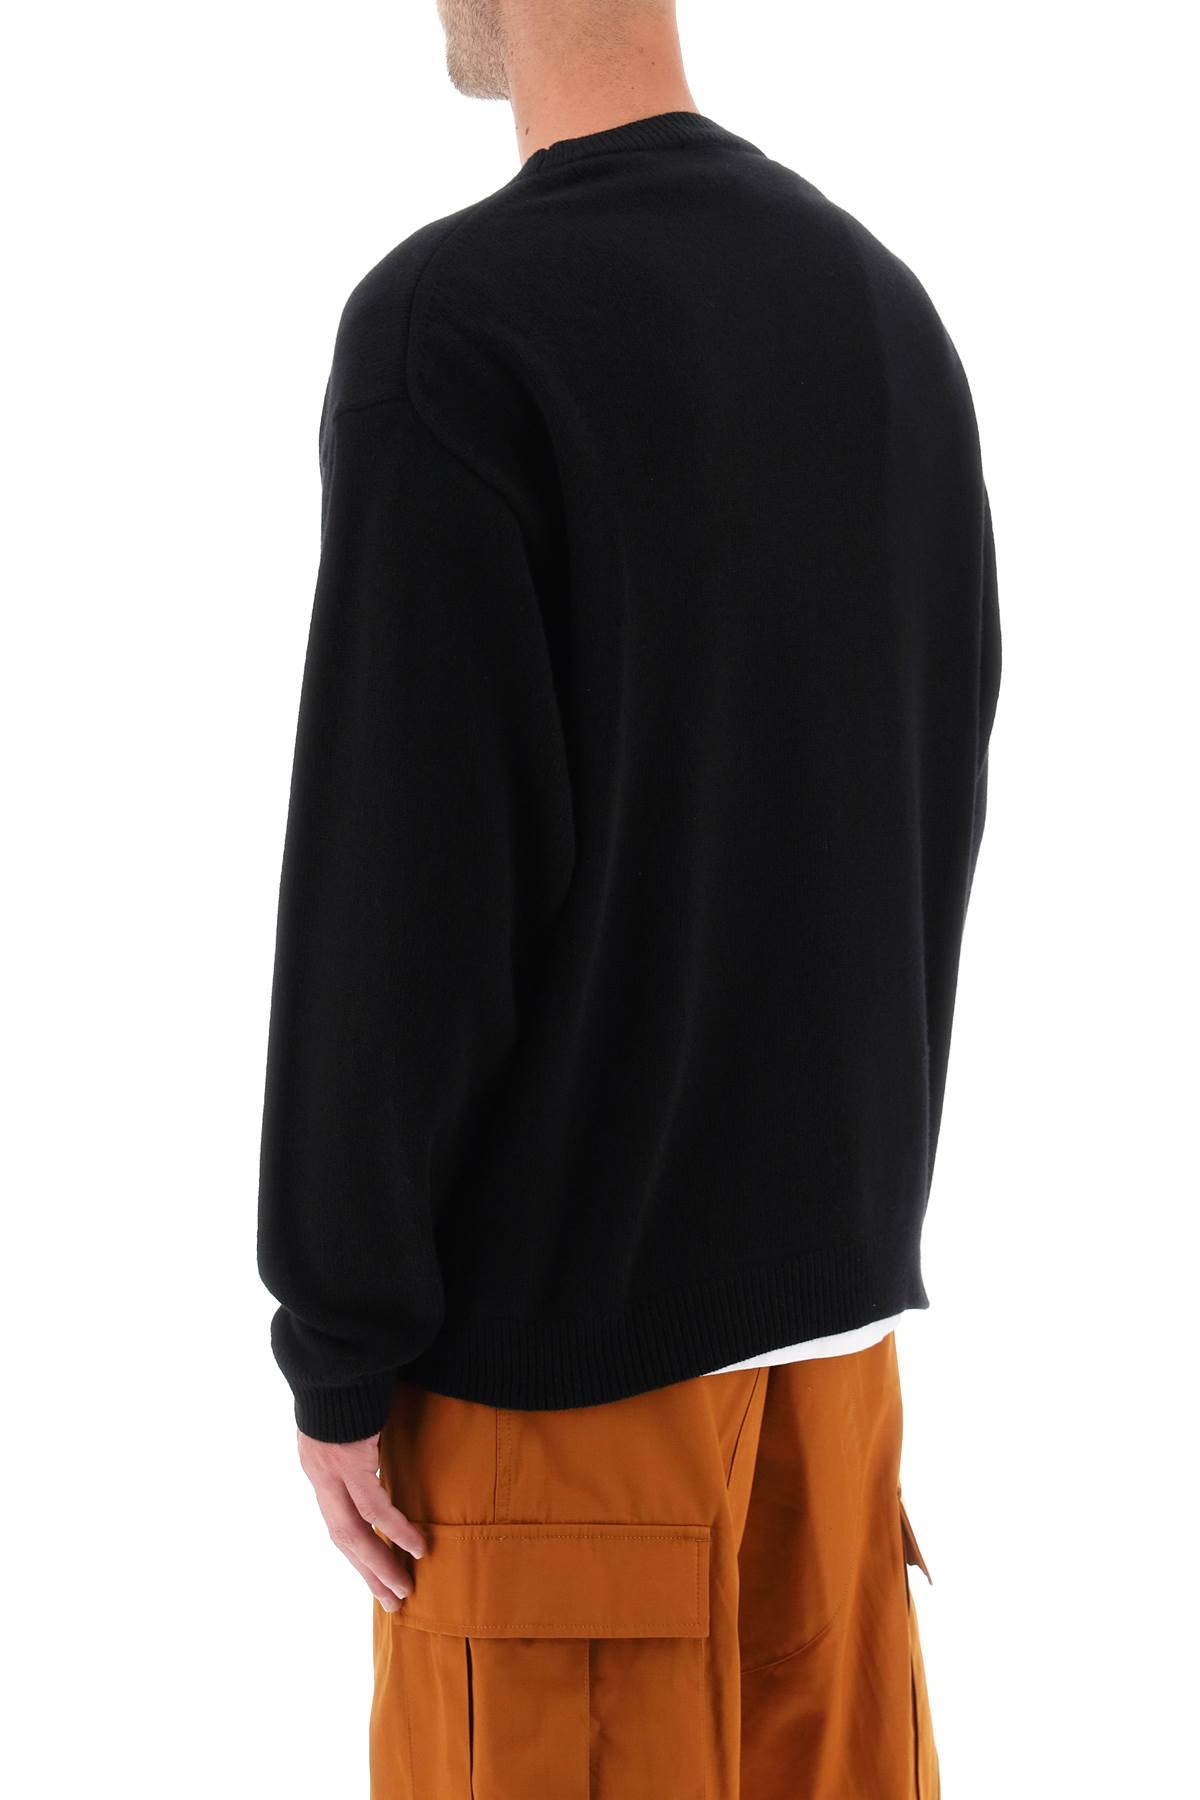 Shop Kenzo Sweater With Boke Flower Patch In Black